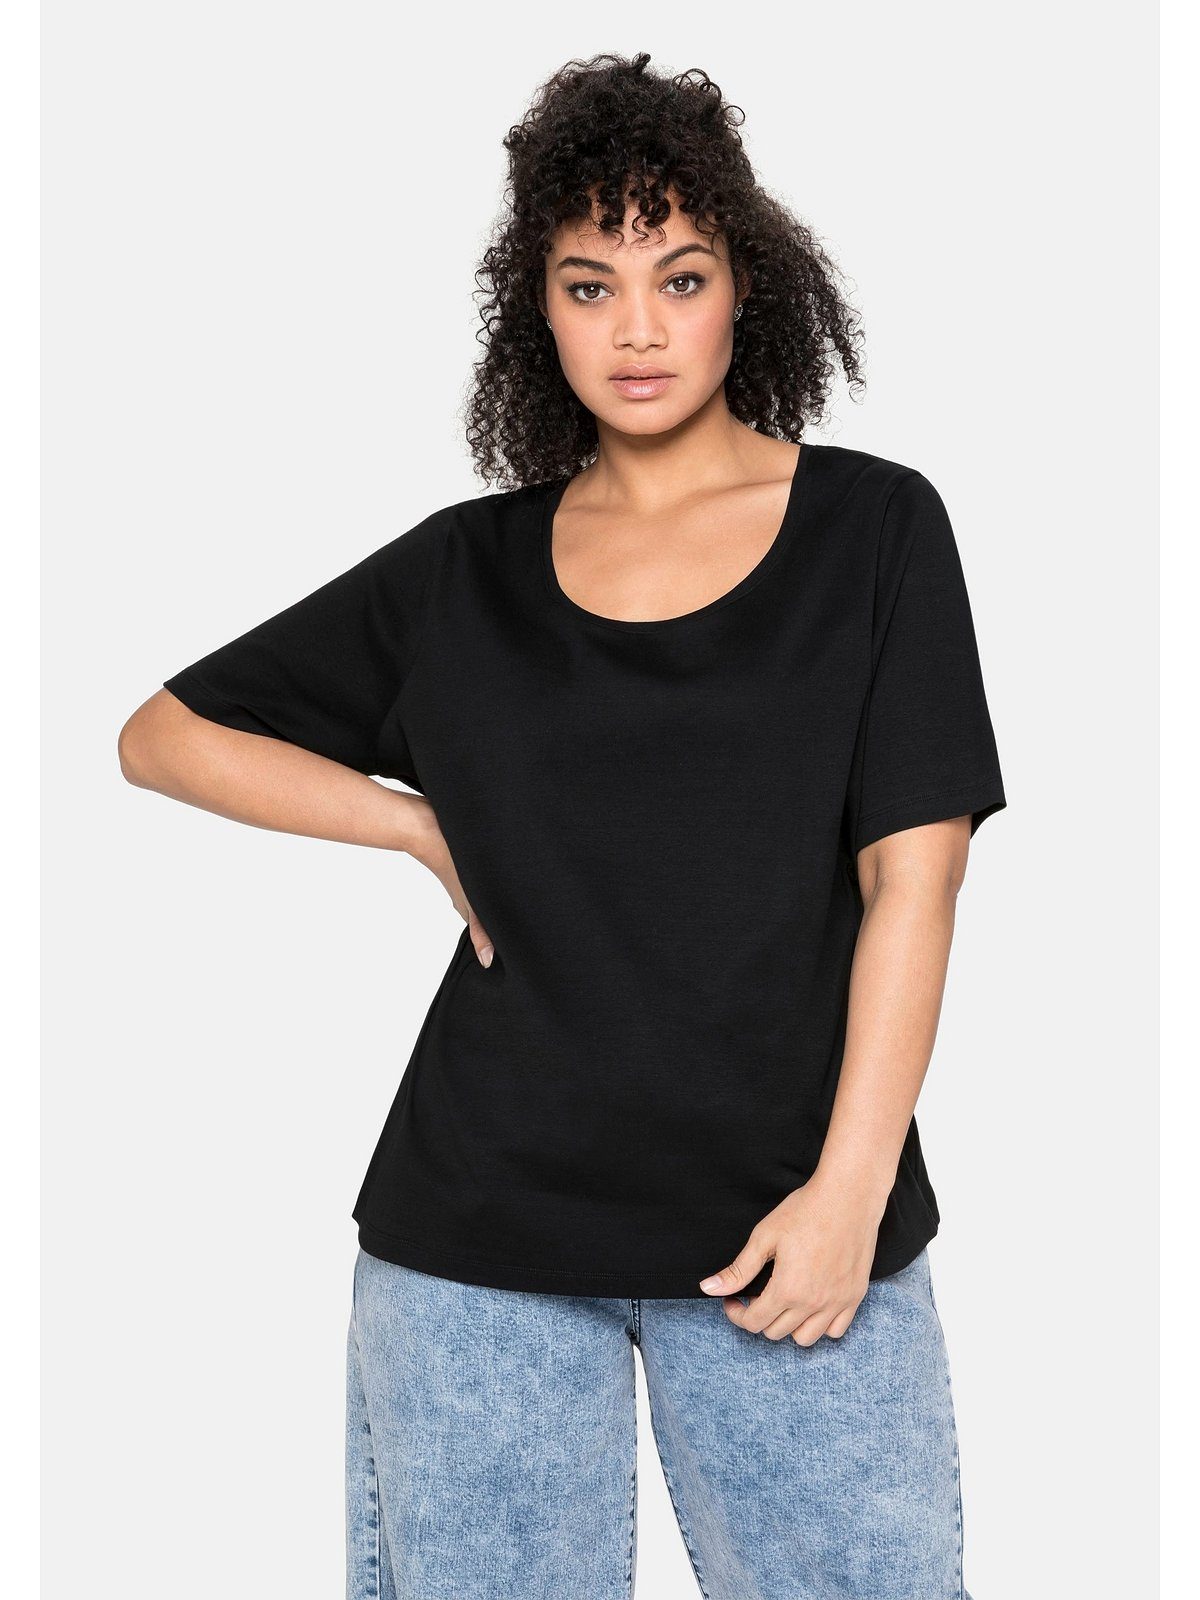 großer Release-Sale Sheego T-Shirt aus Große schwarz reiner Größen Baumwolle